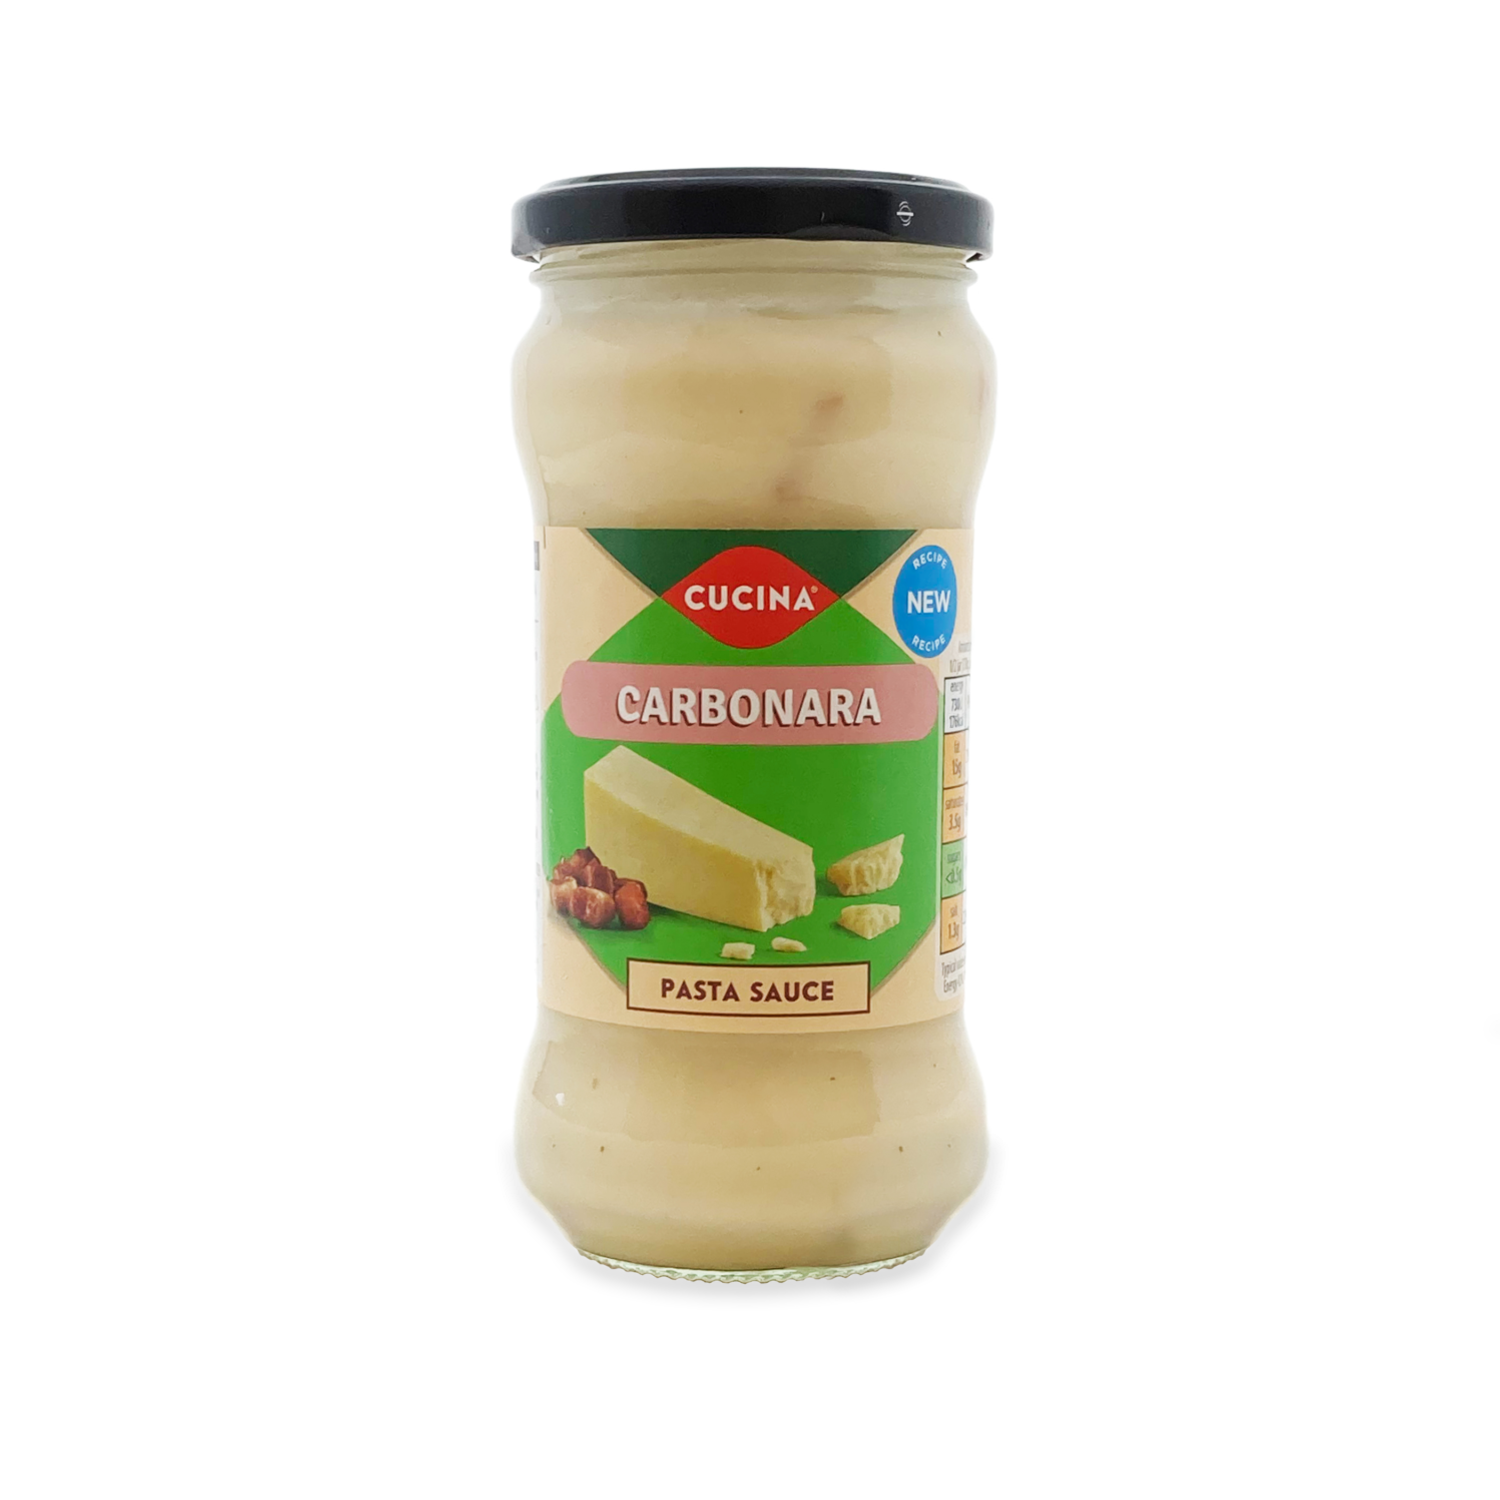 Cucina Carbonara Pasta Sauce 340g (2pack)